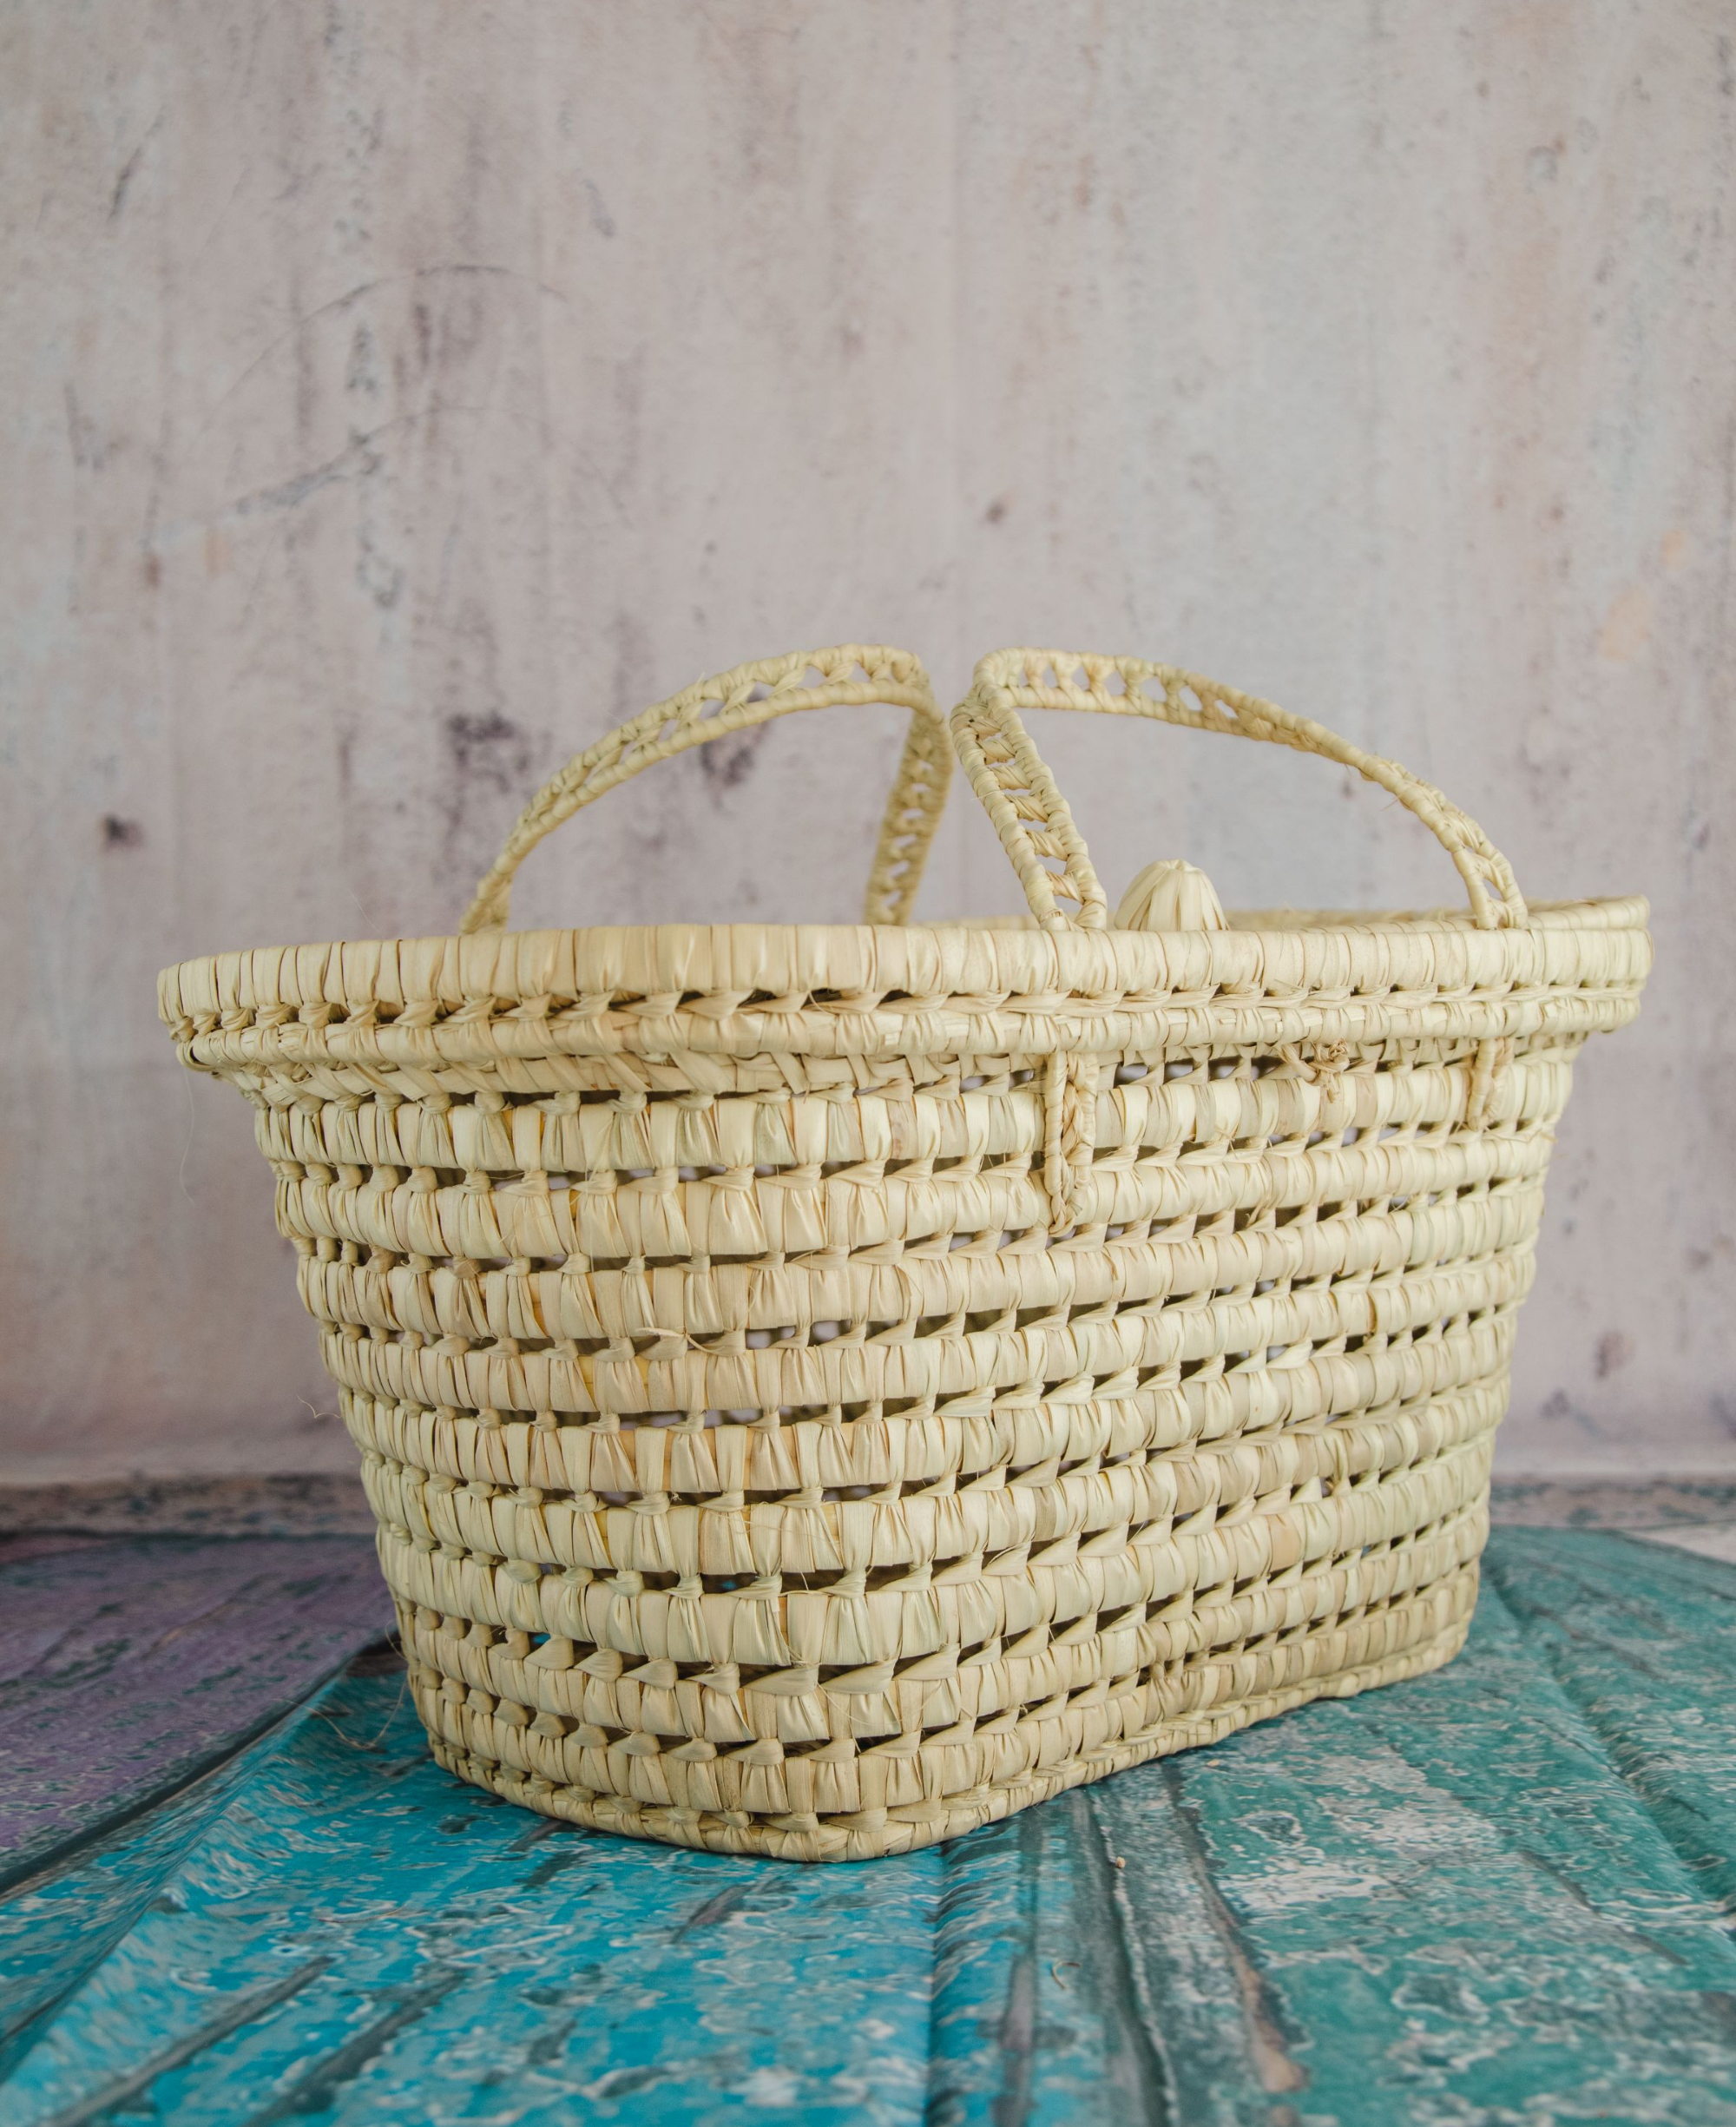 Wicker Storage Trunk Baskets - Palm Leaf Storage Chests - Handmade Rattan Basket Storage